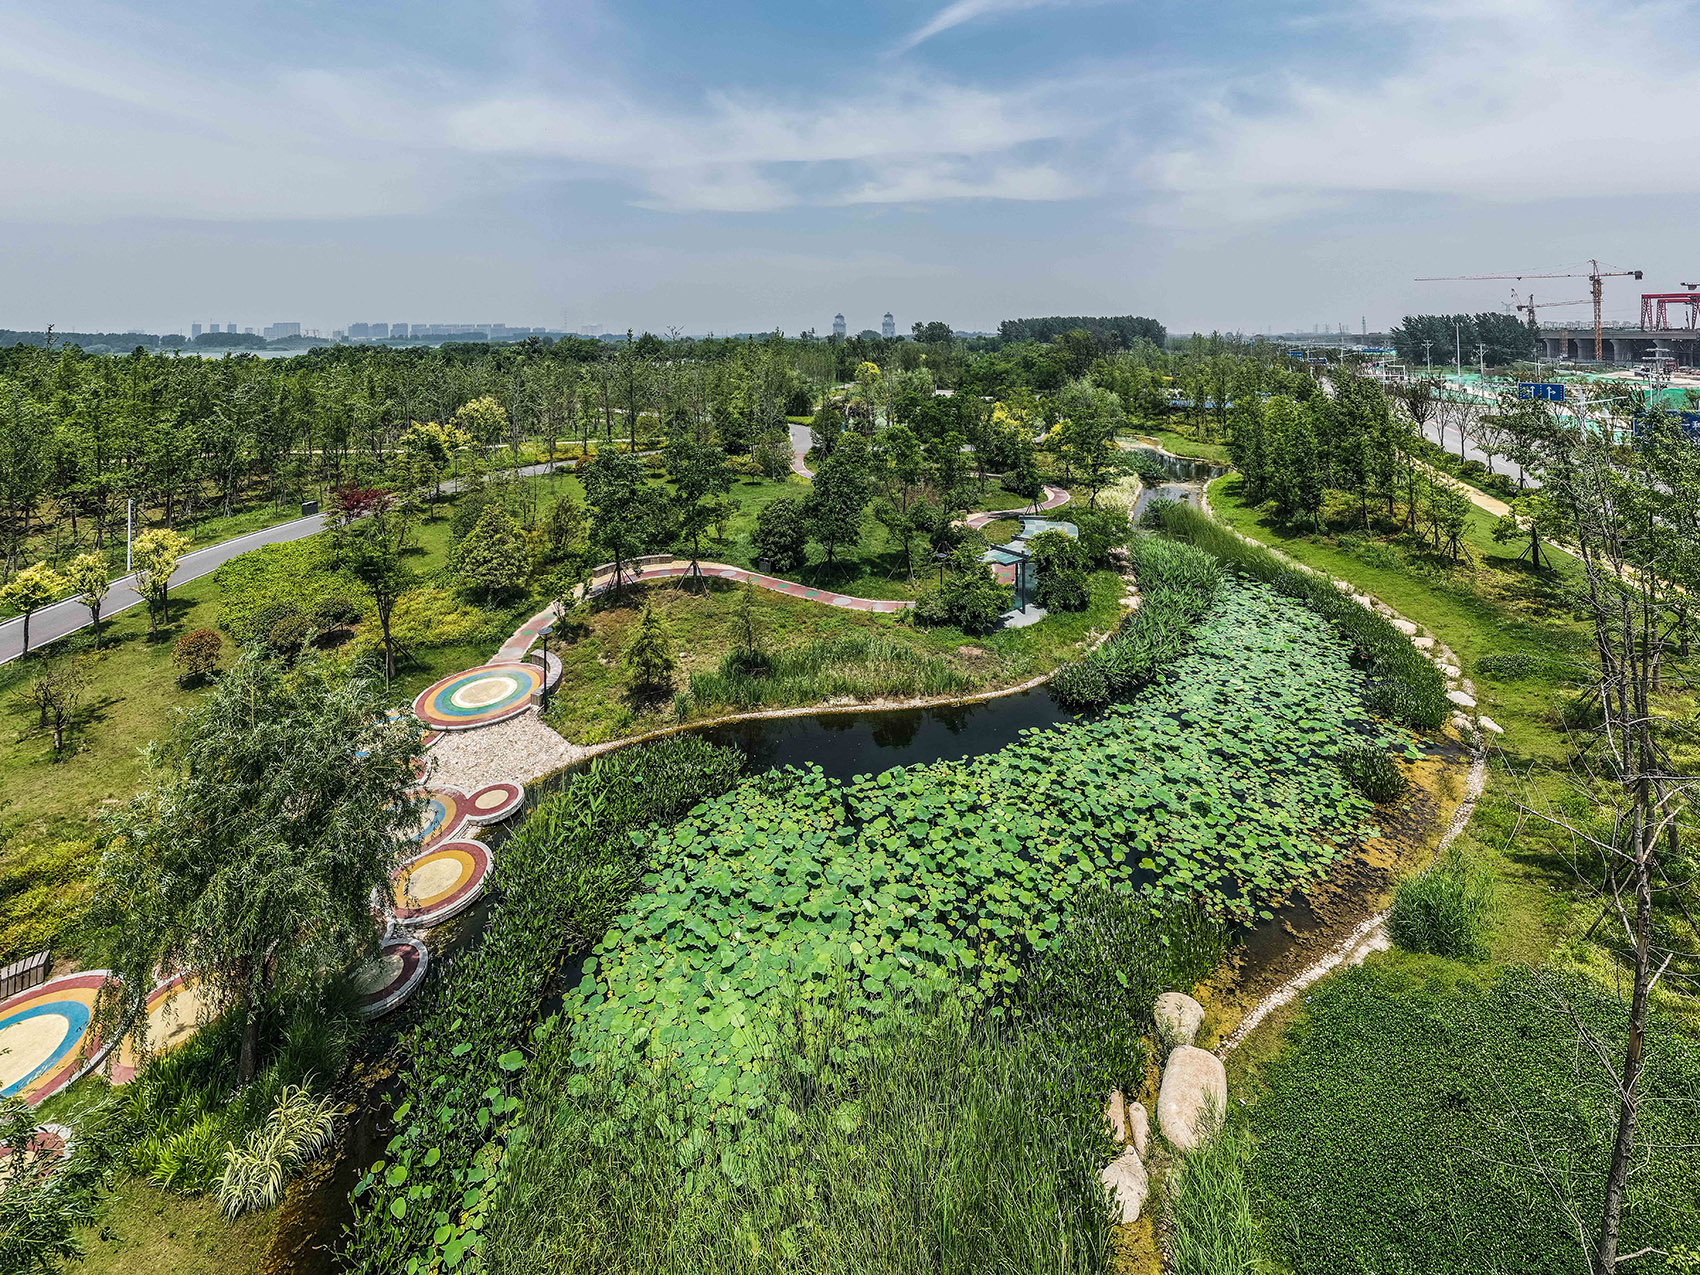 扬州的伟大复兴 &  廖家沟城市中央公园，扬州/迈向繁荣生态的后瘦西湖时代-103